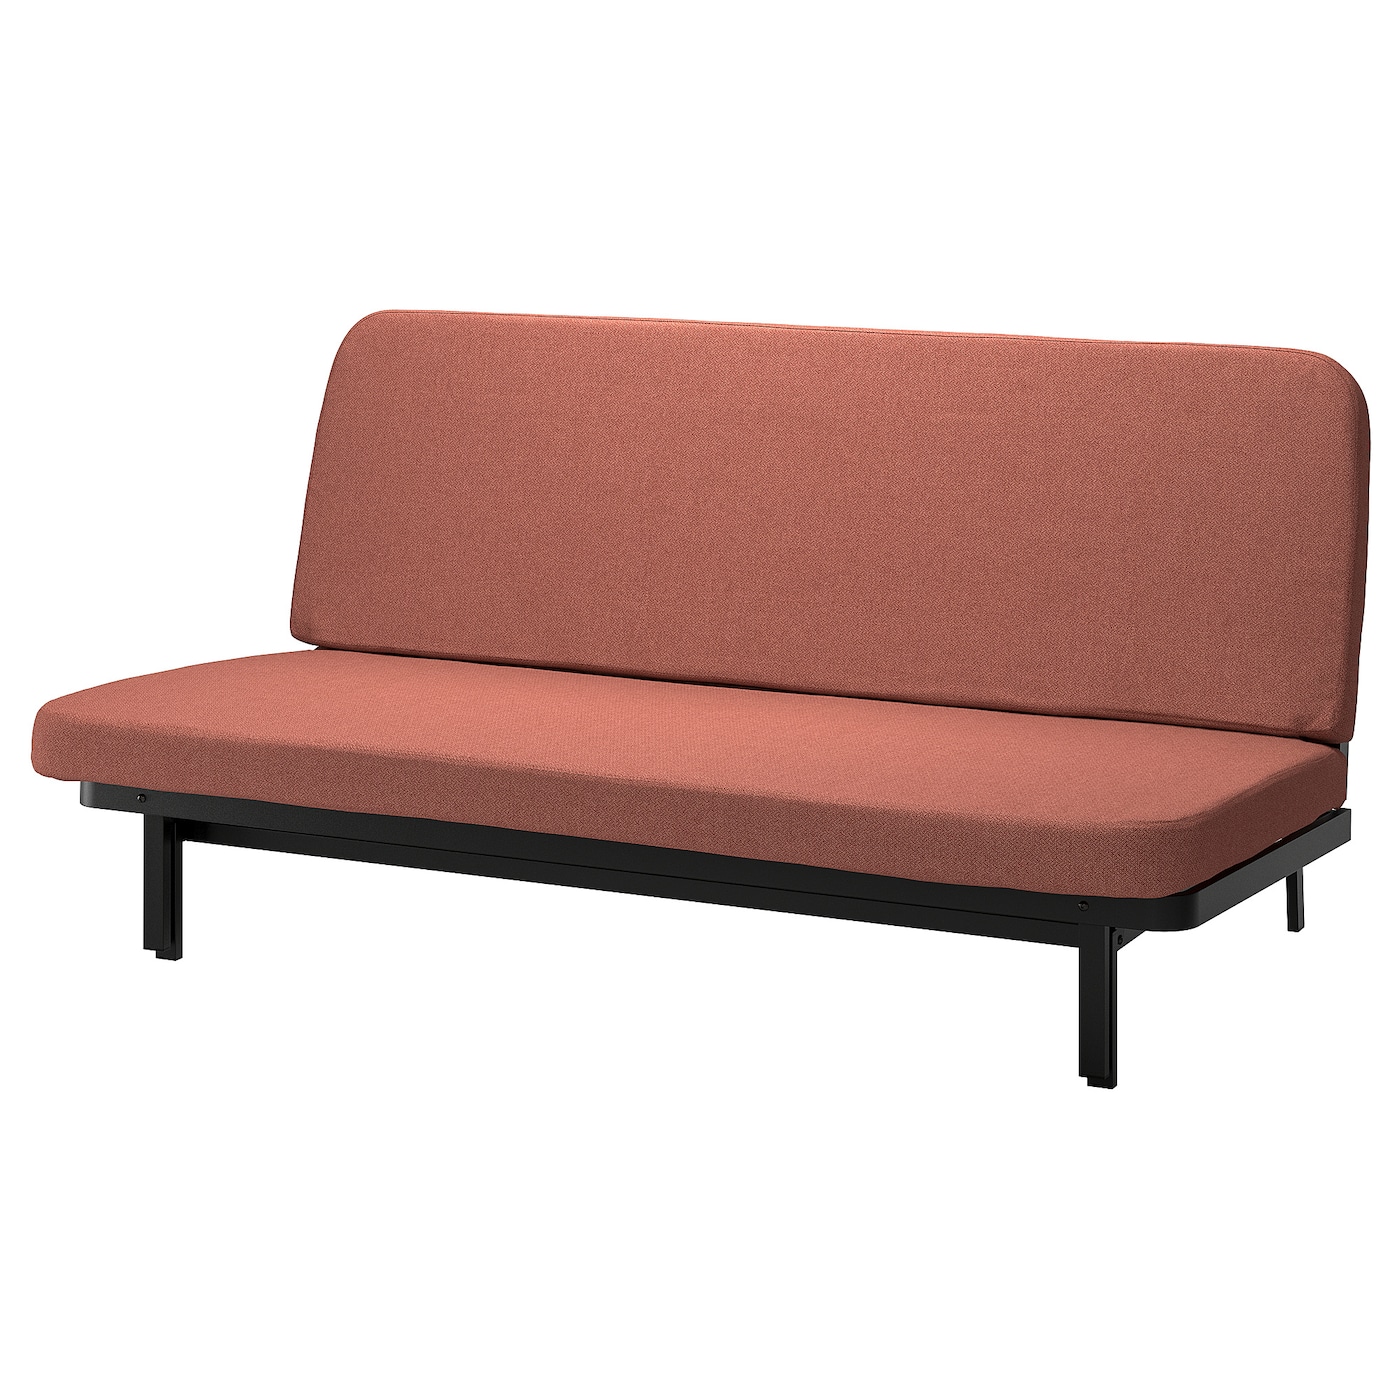 NYHAMN 3-местный диван-кровать, пружинный матрас в комплекте/Скартофта красный/коричневый IKEA съемный и моющийся ленивый диван татами складной одинарный диван кровать спинка стул для балкона эркера складная подушка диван стул